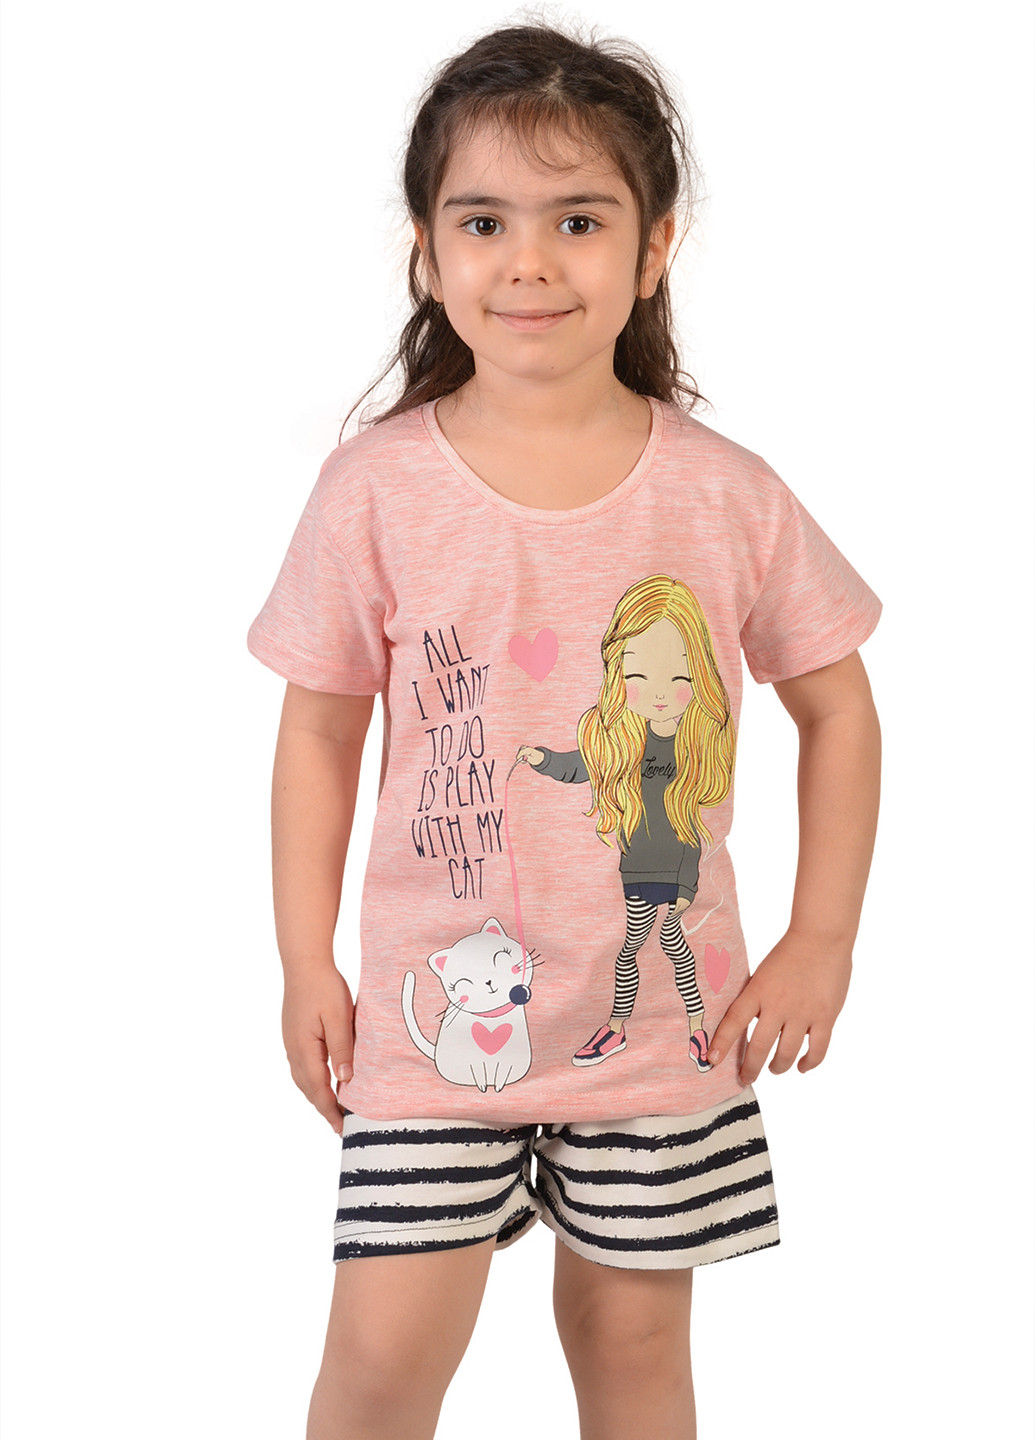 Розовая всесезон пижама (футболка, шорты) футболка + шорты Nicoletta